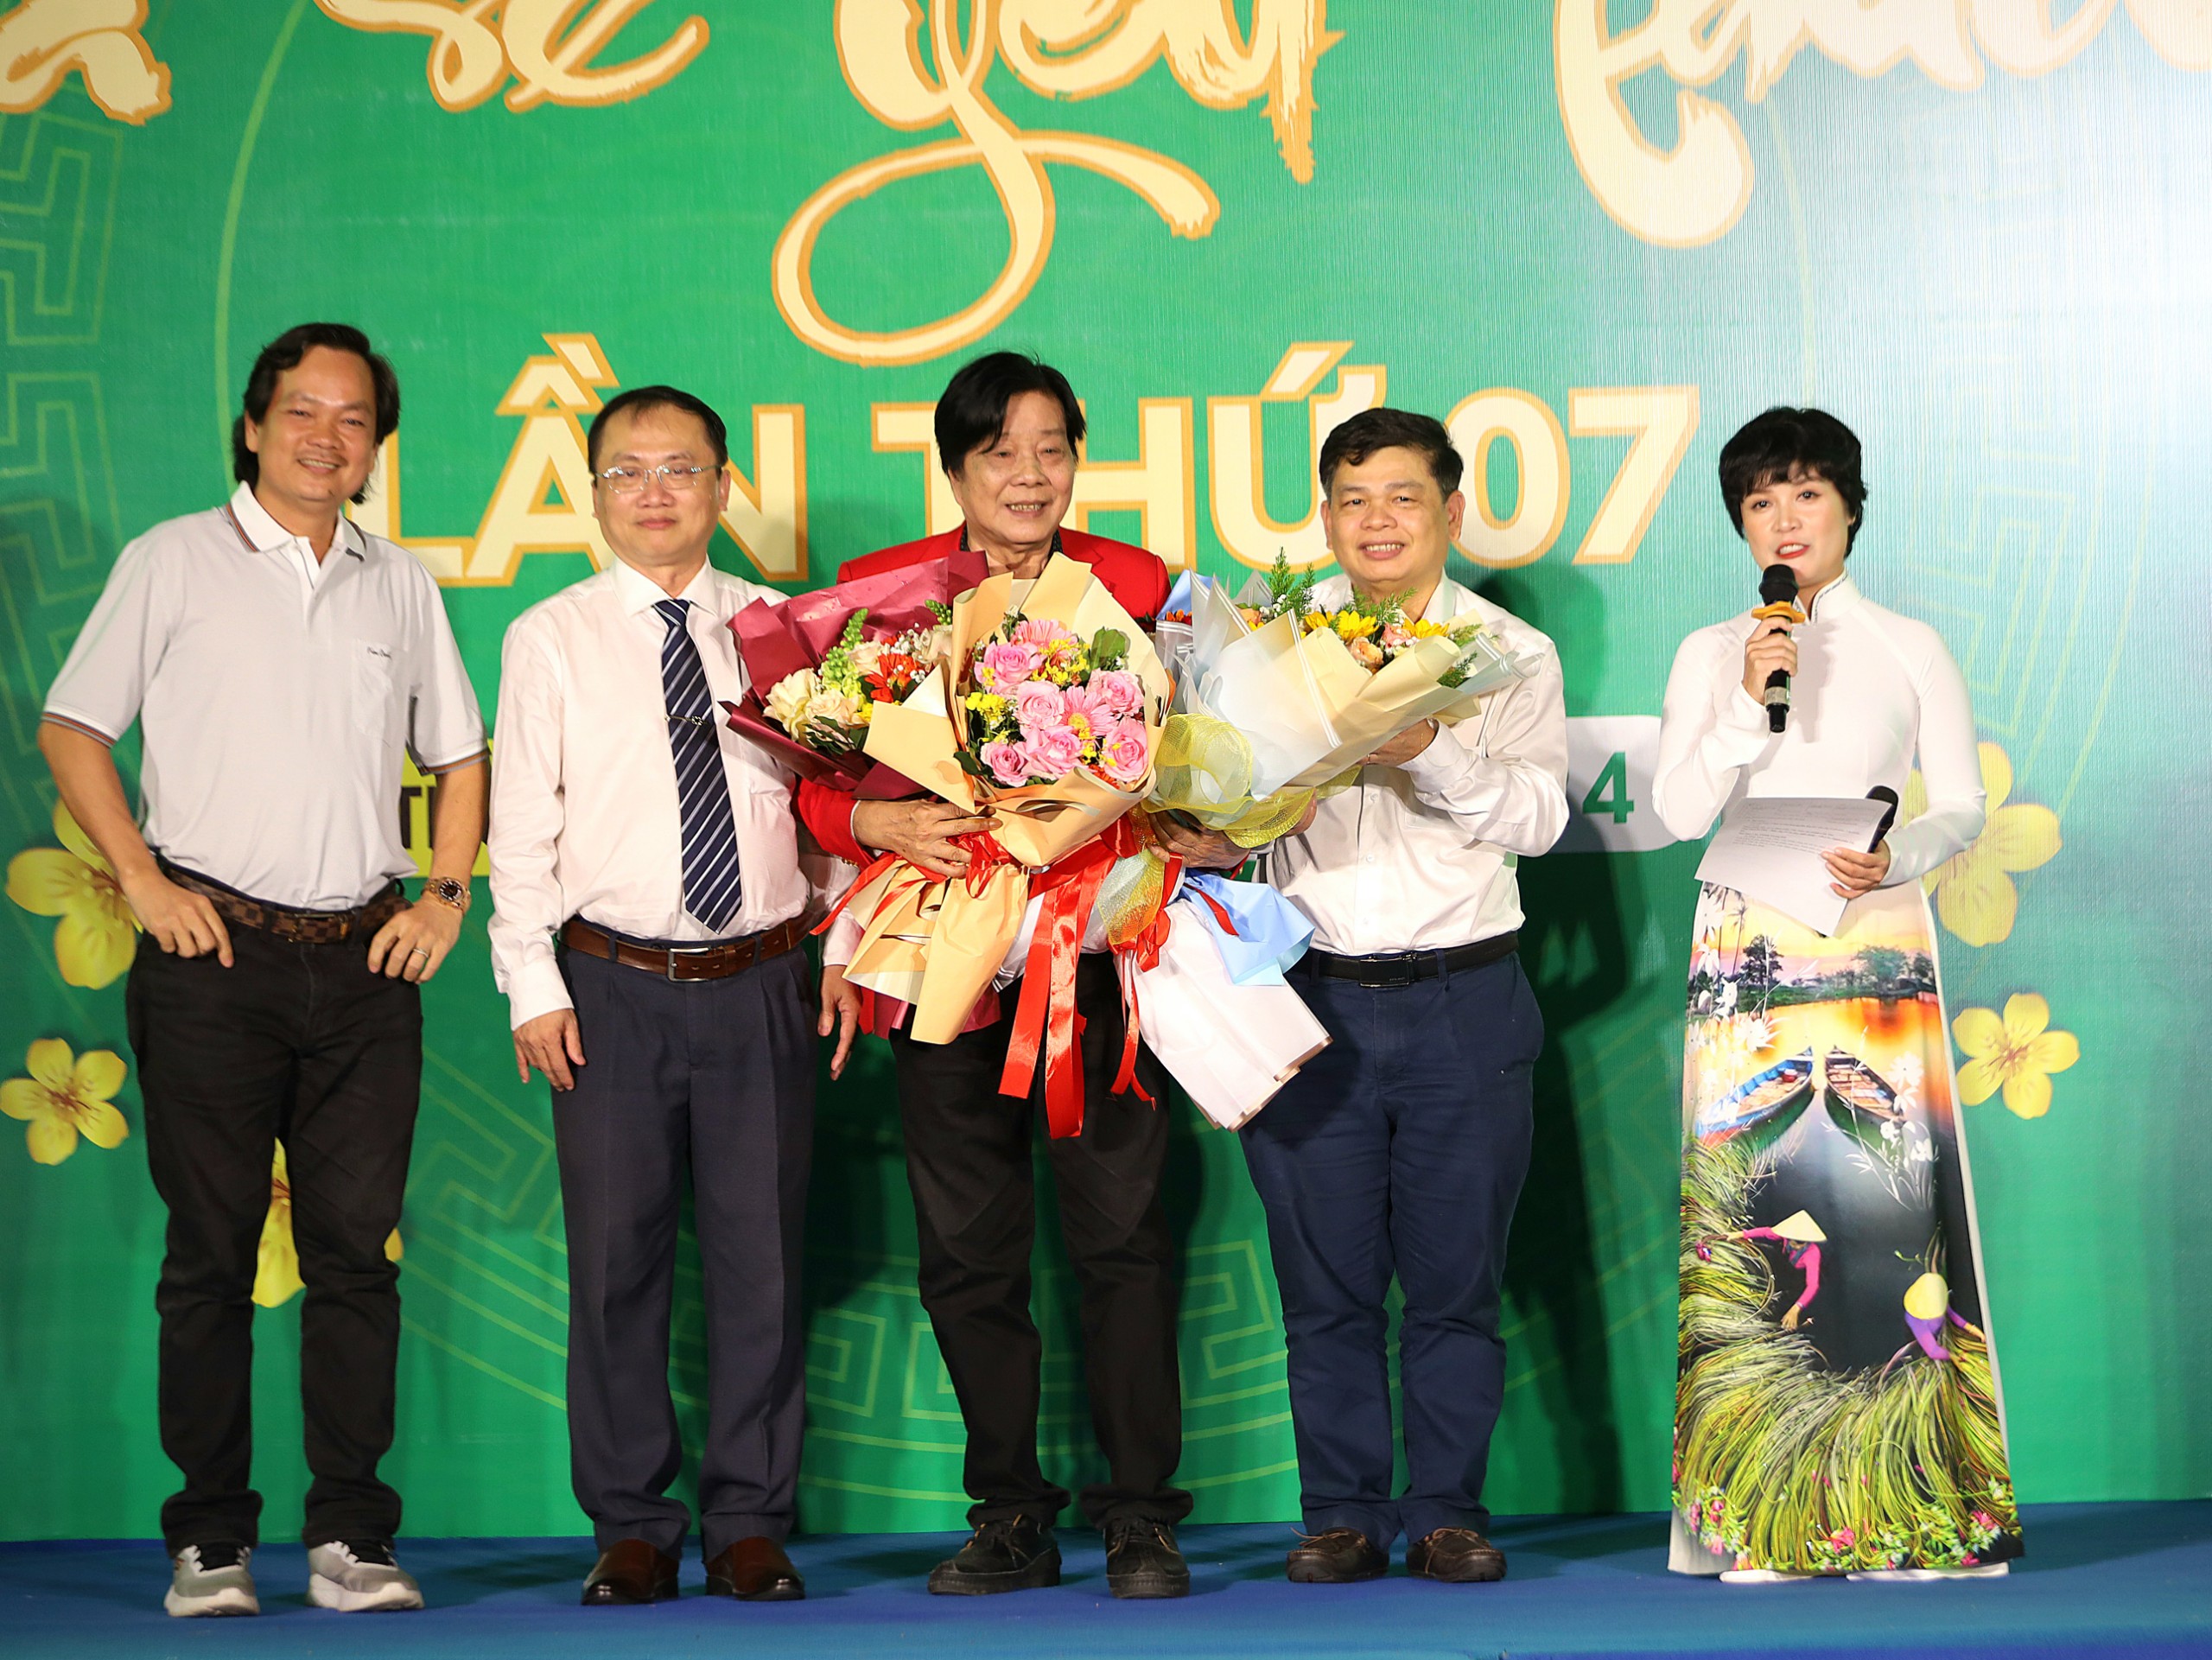 Ban lãnh đạo Bệnh viện Đa khoa Trung ương Cần Thơ trao tặng hoa cho NSND Trọng Hữu đã luôn đồng hành cùng chương trình trong nhiều năm qua.